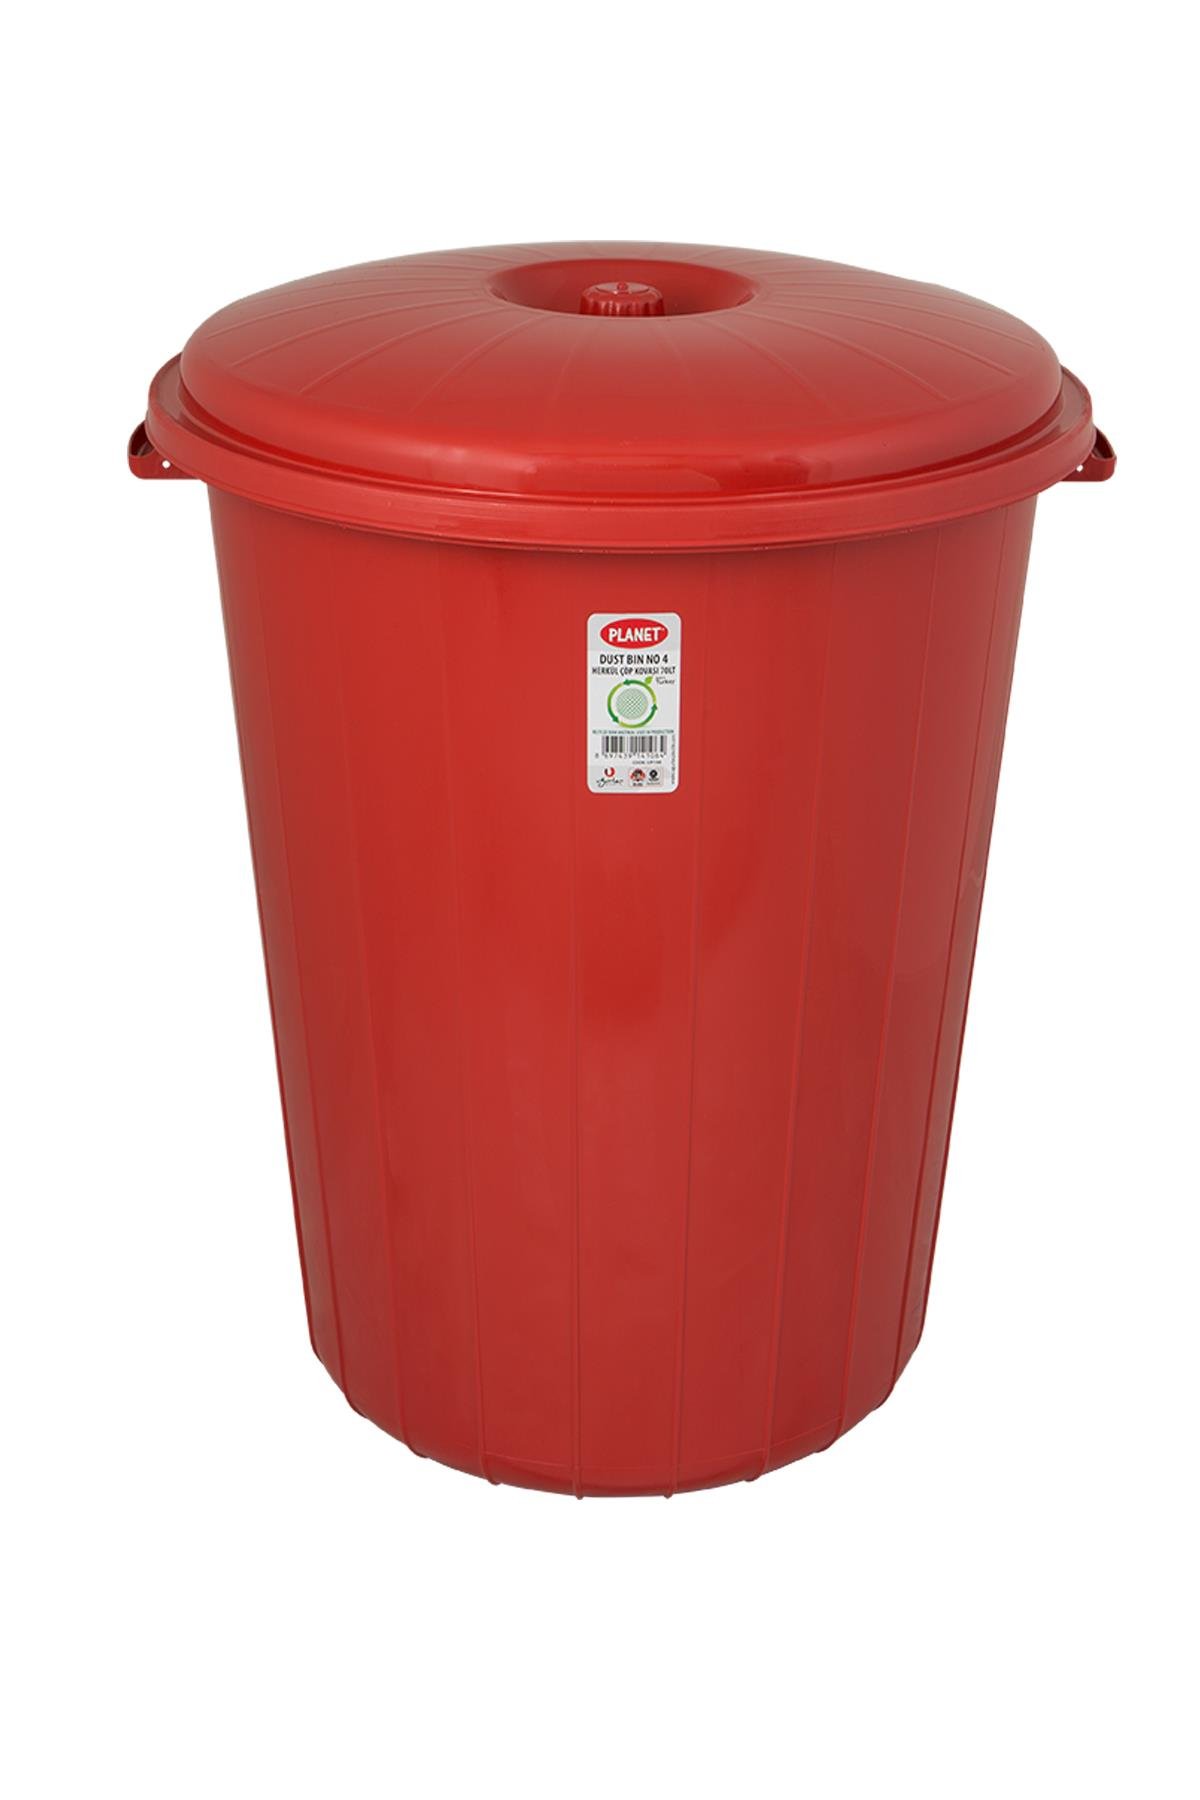 Çöp Kovası Renkli Herkül 70 LT No. 4 Kırmızı | Uğurlar Plastik